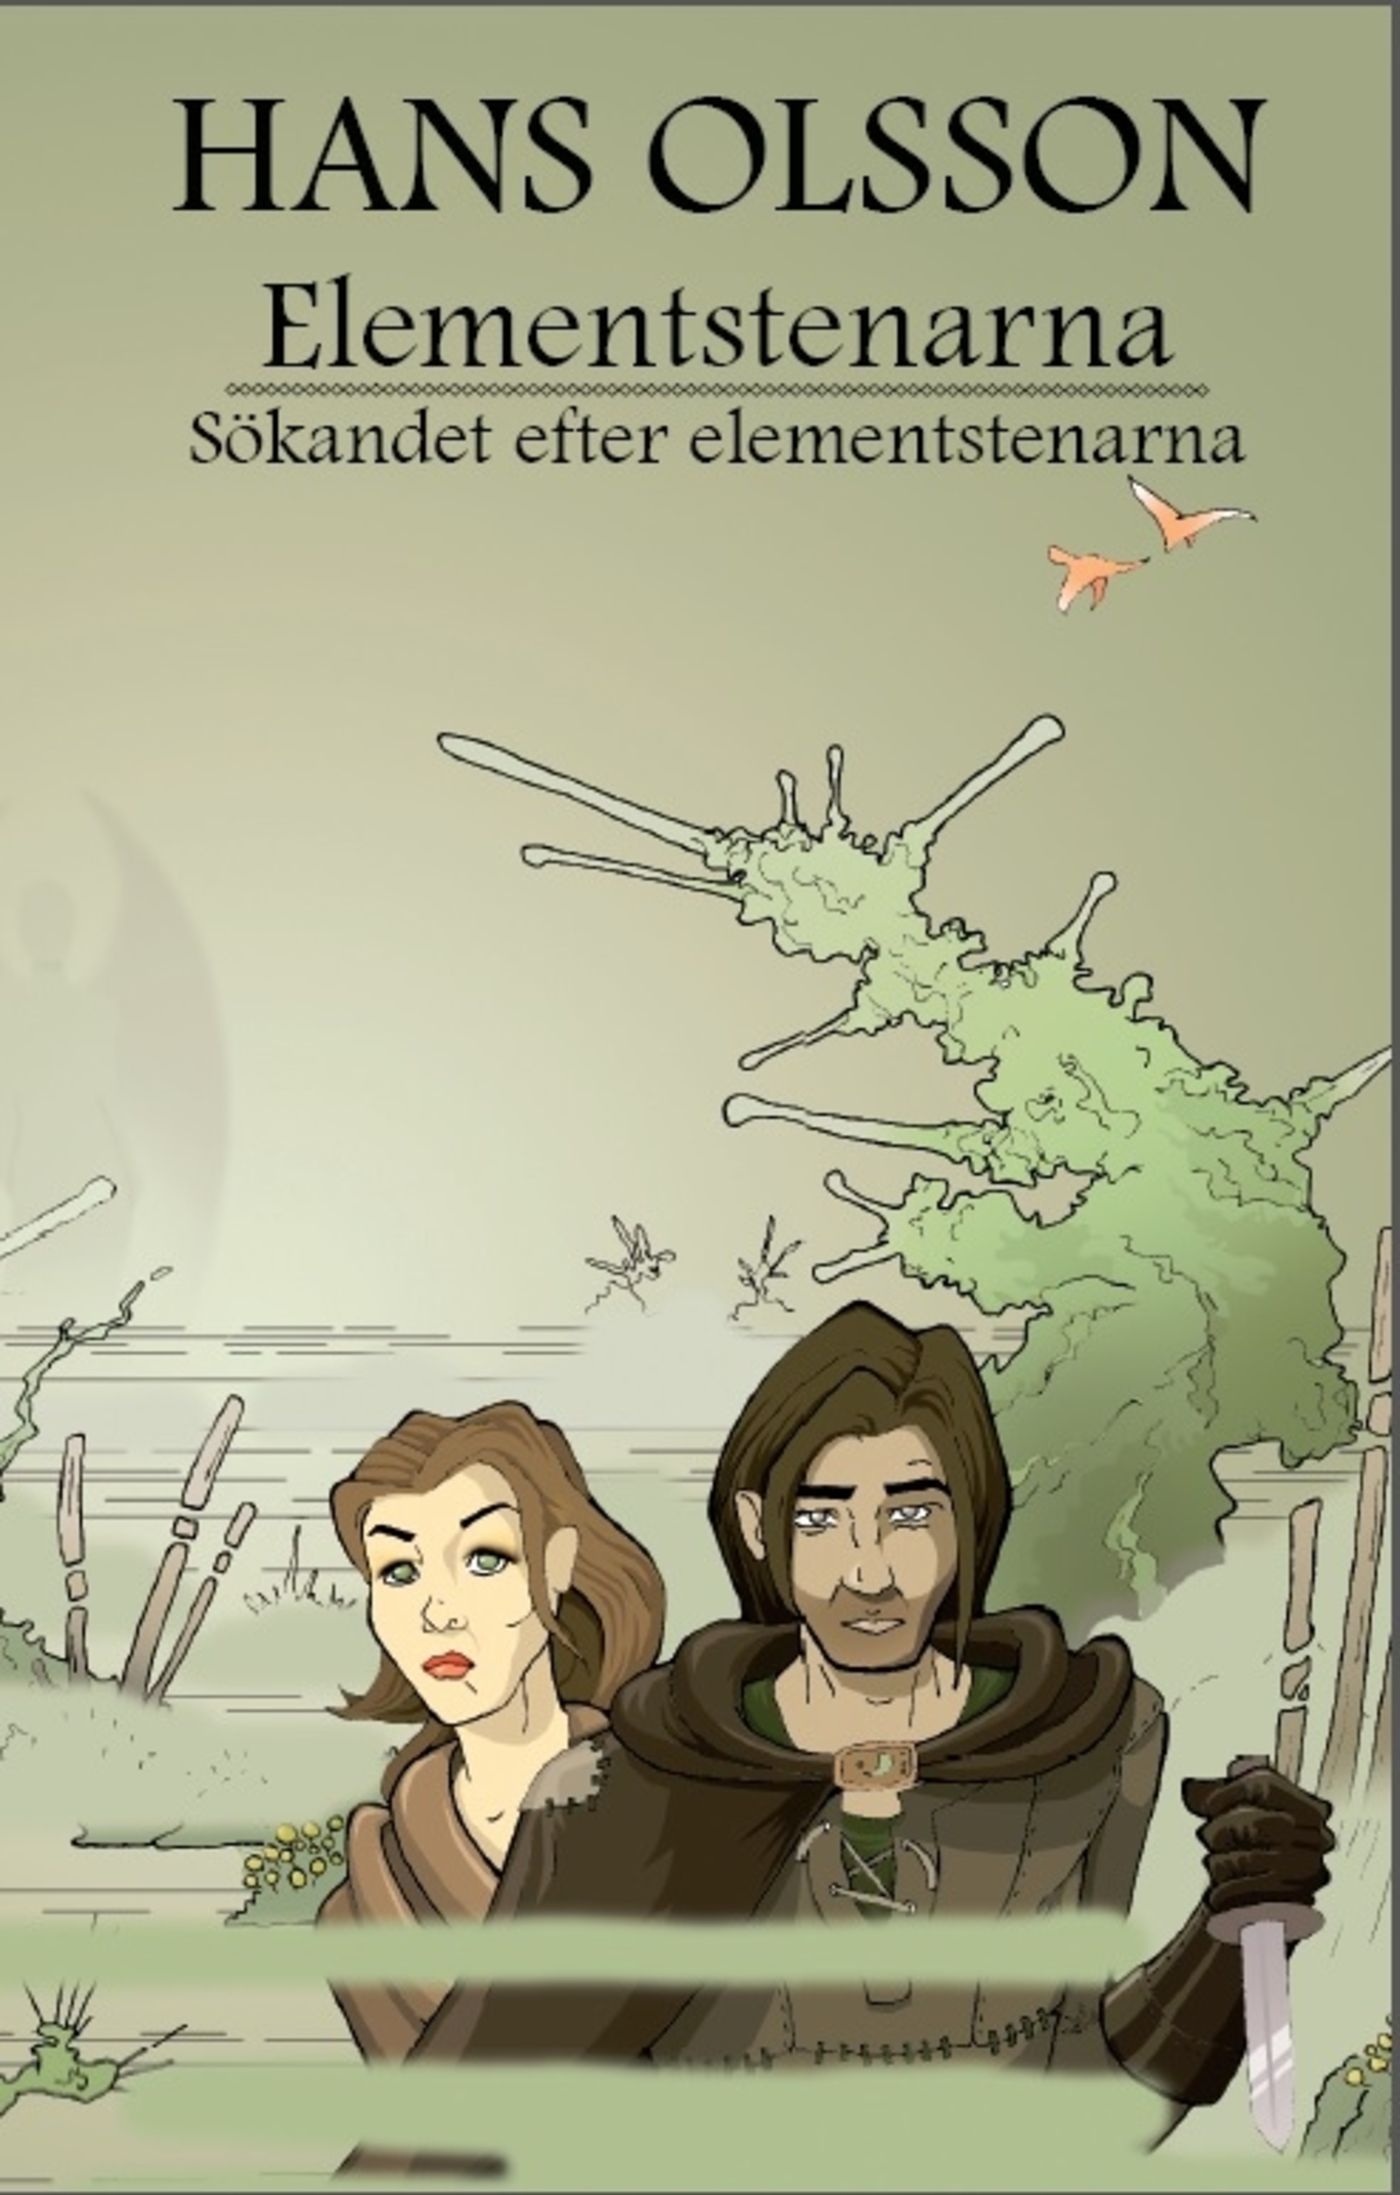 Sökandet efter elementstenarna, eBook by Hans Olsson